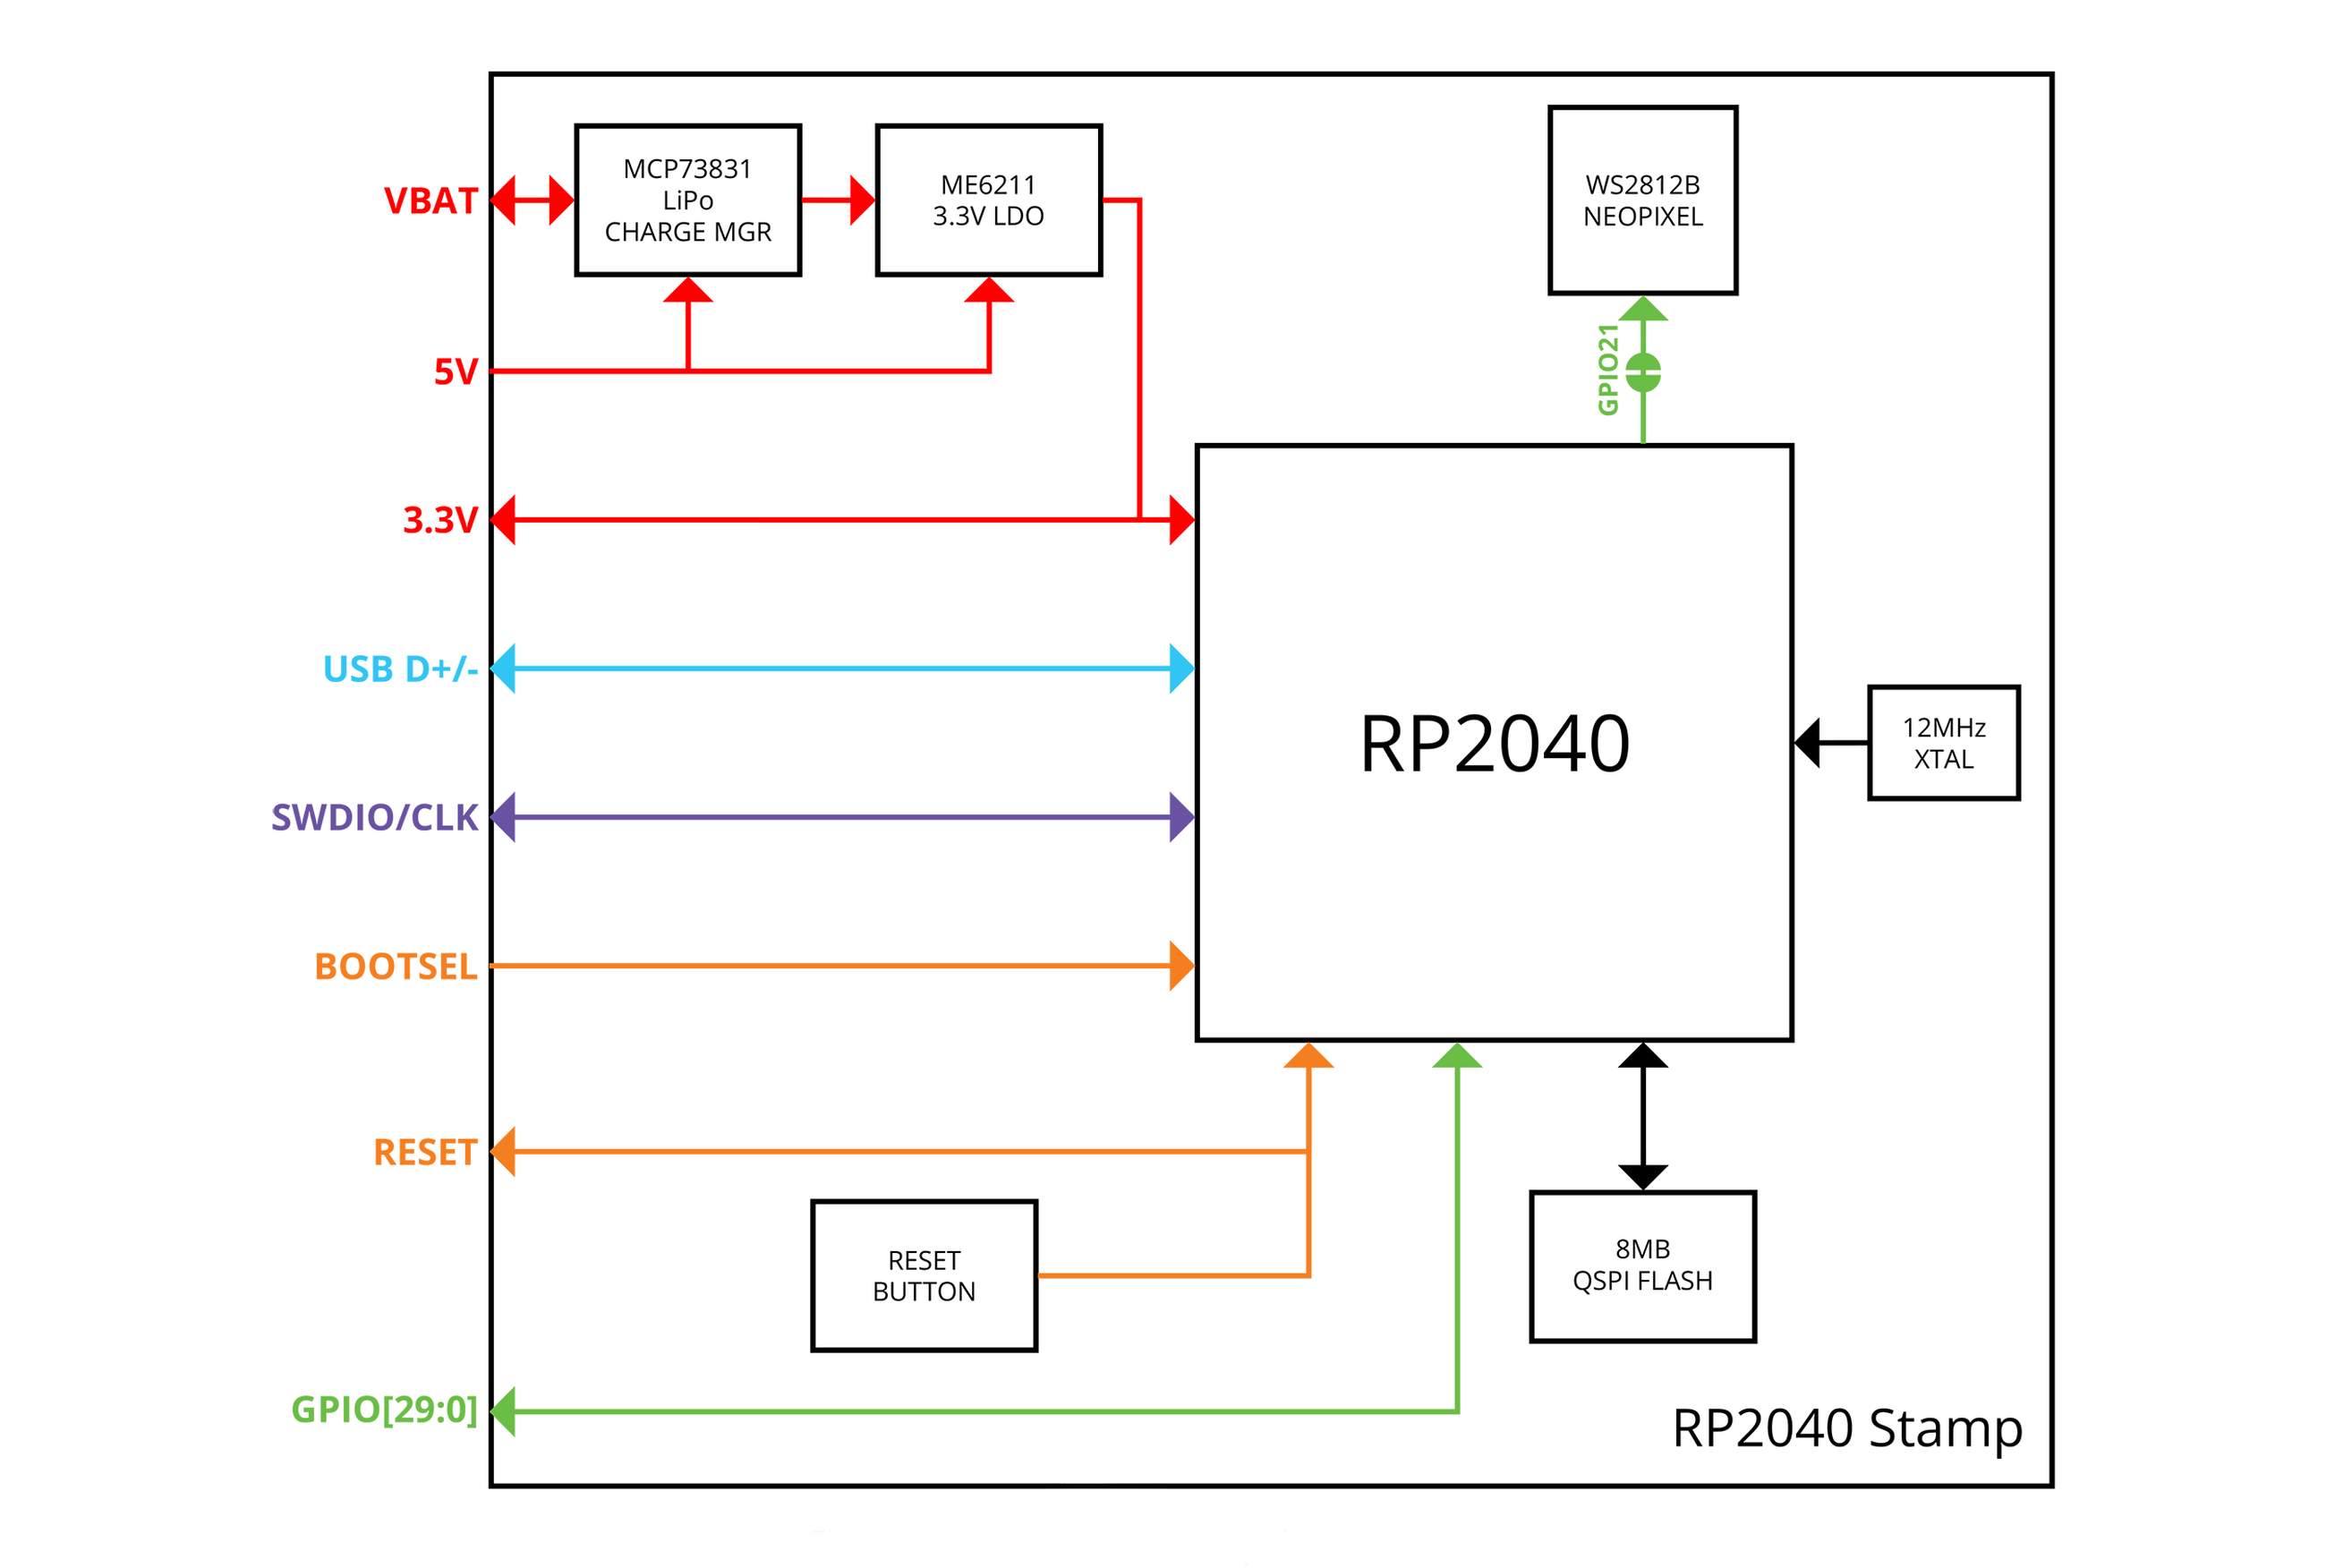 RP2040 Stamp Block diagram